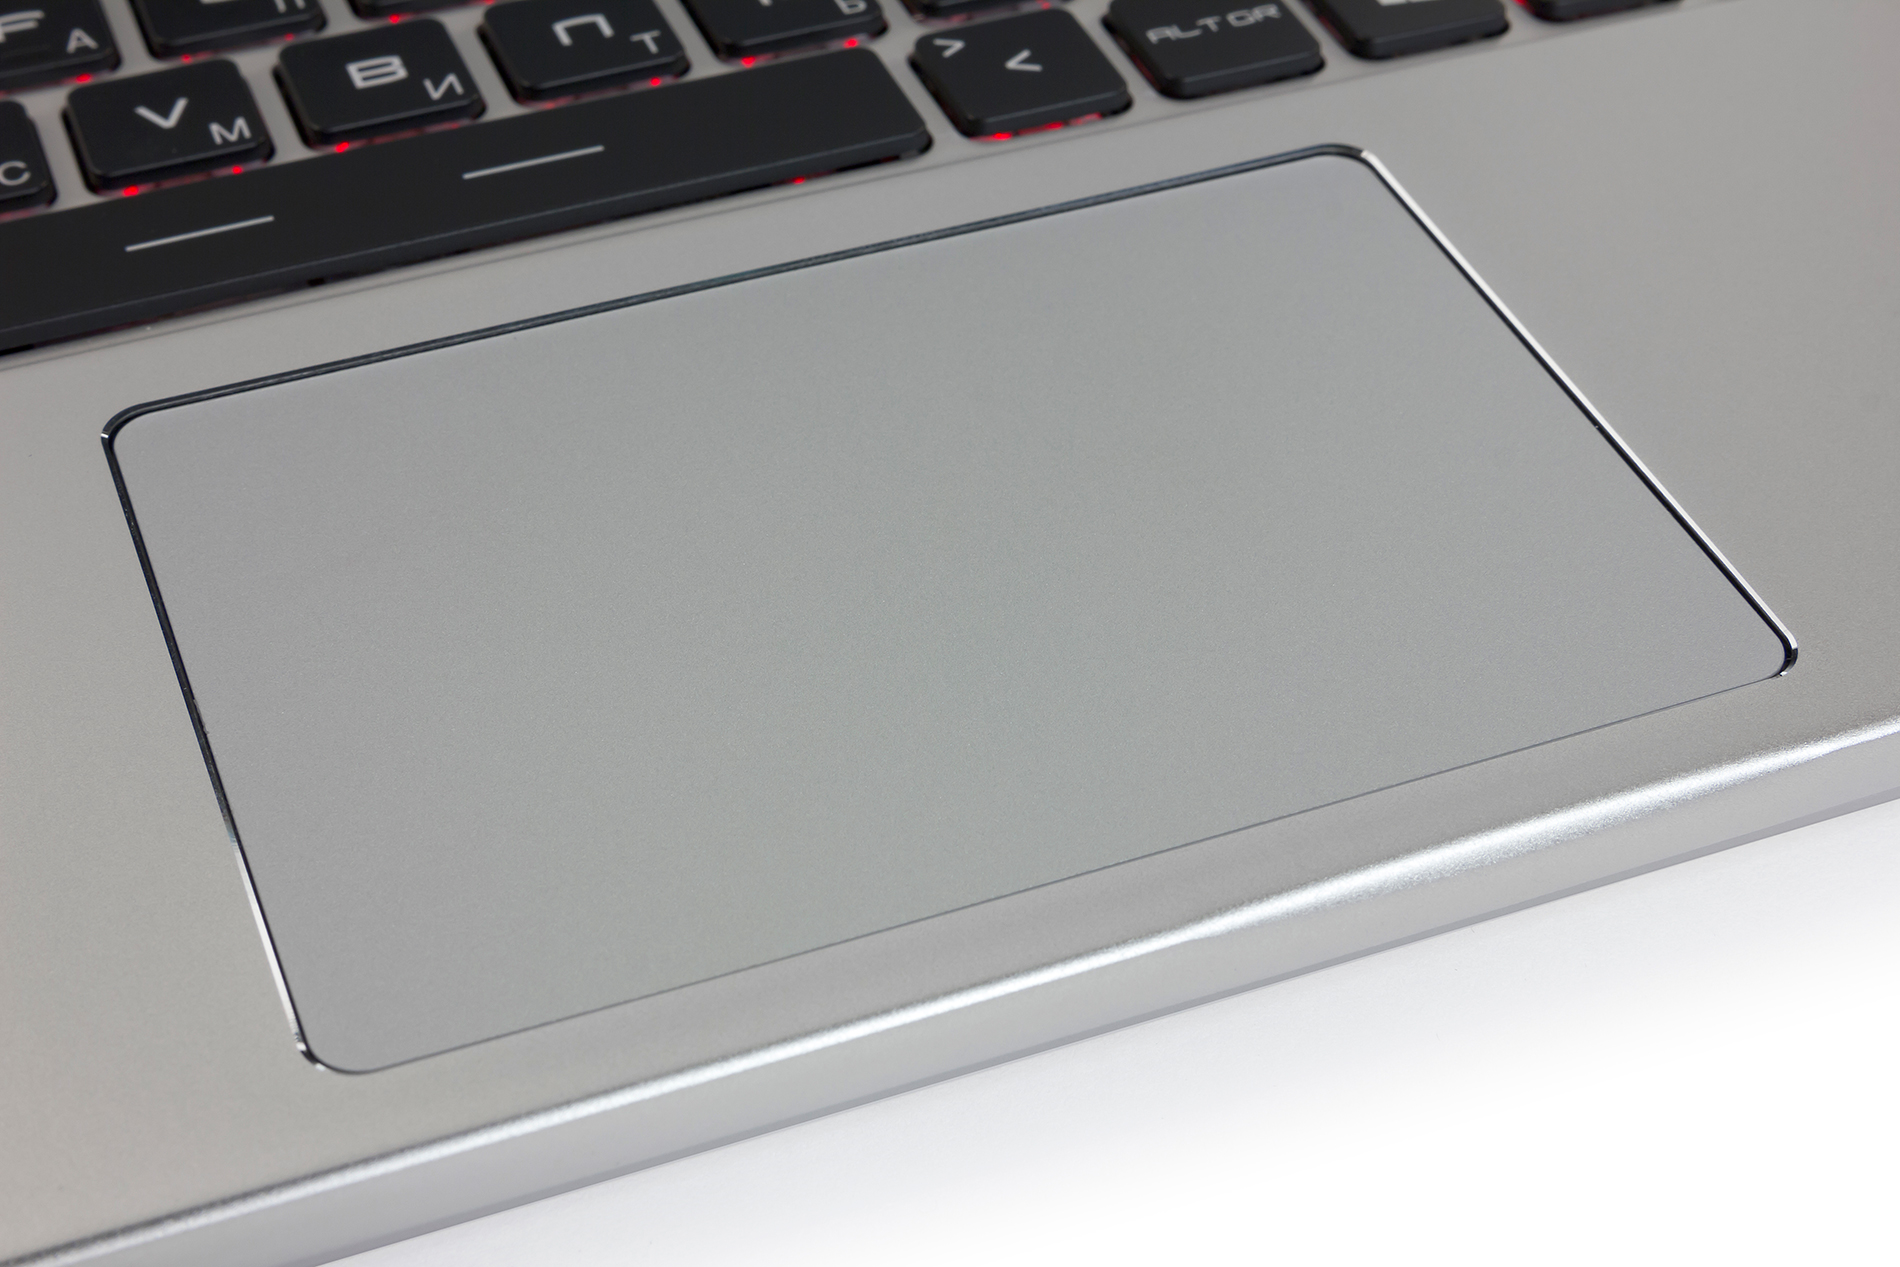 Ноутбук Msi Gs70 2qe Stealth Pro (Gs702qe-093ua)